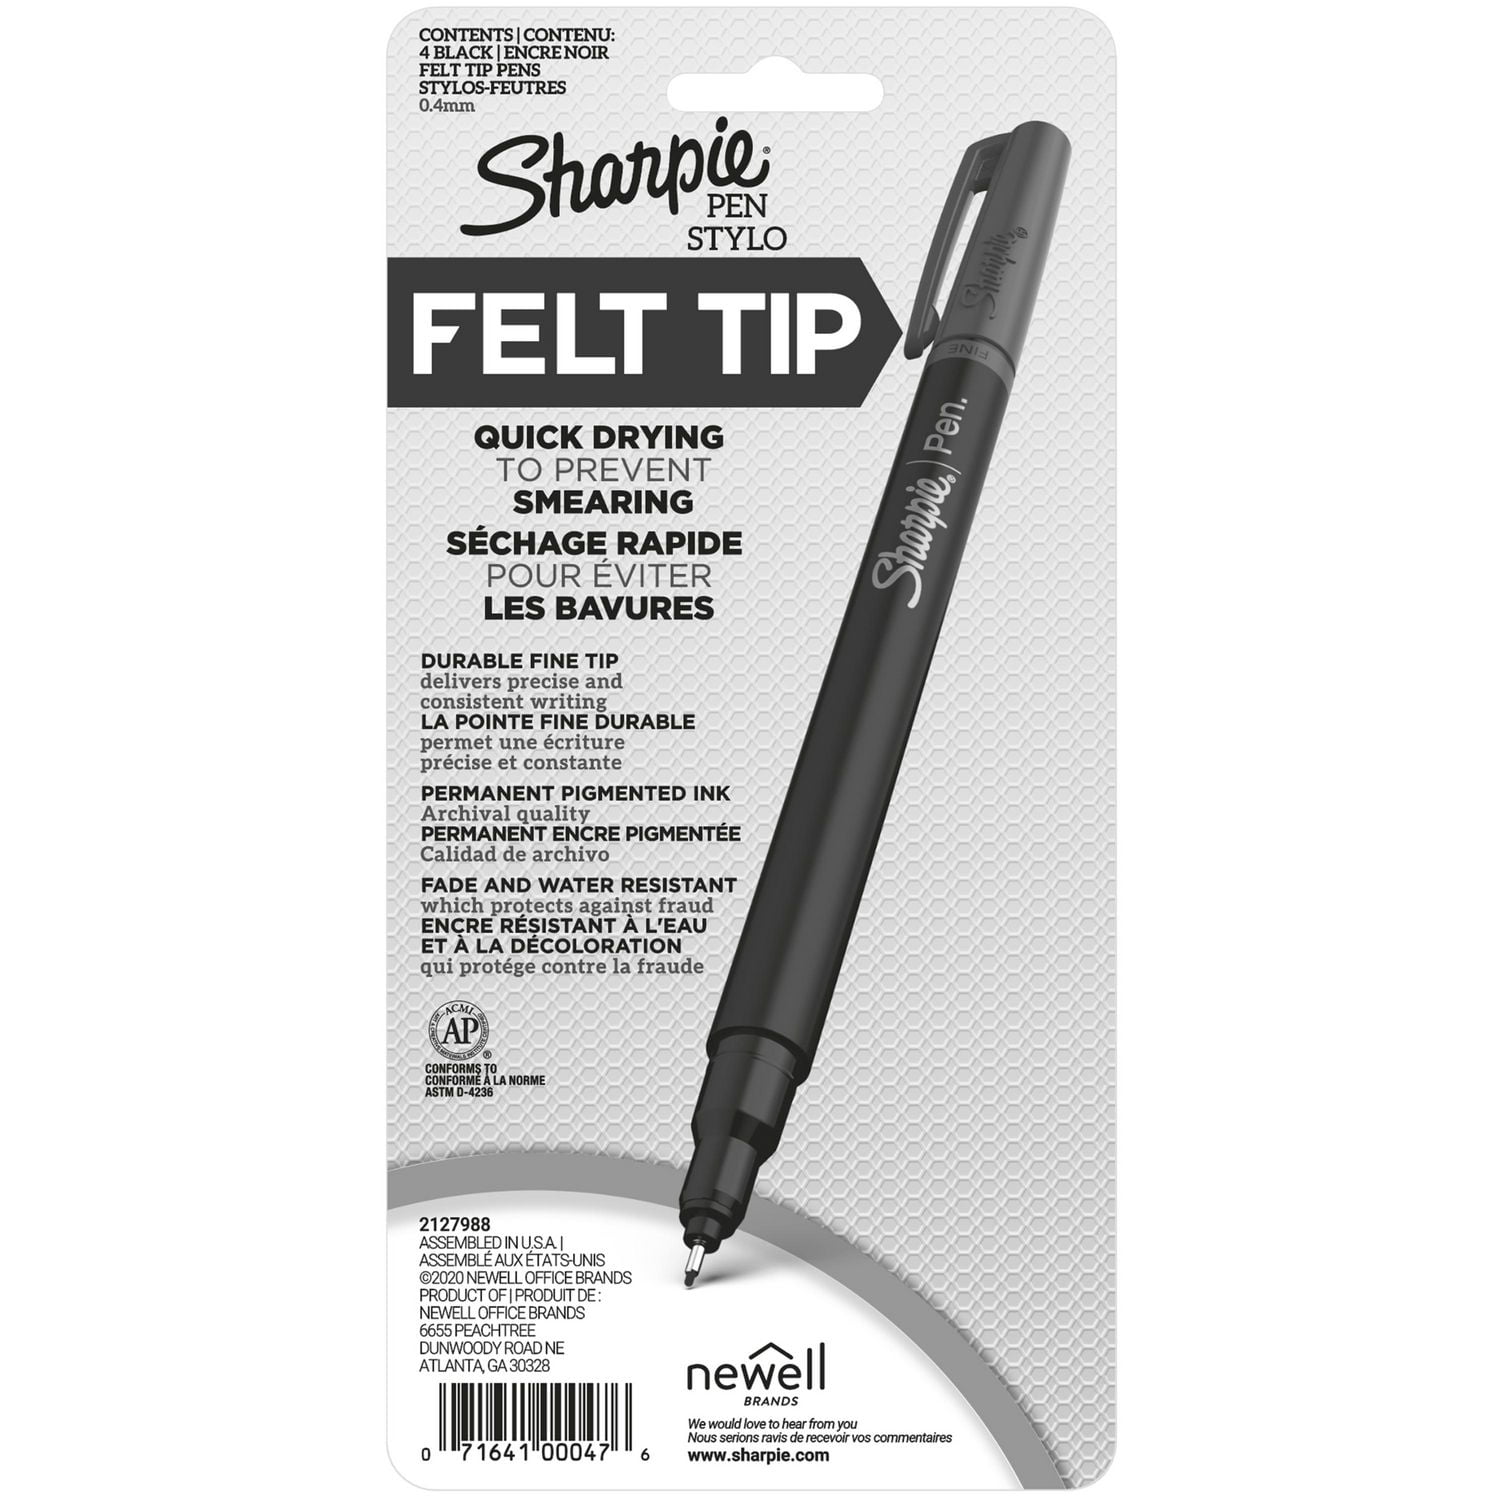 Sharpie Felt Tip Pens, Fine Point (0.4mm), Black, 4 Count, Quick